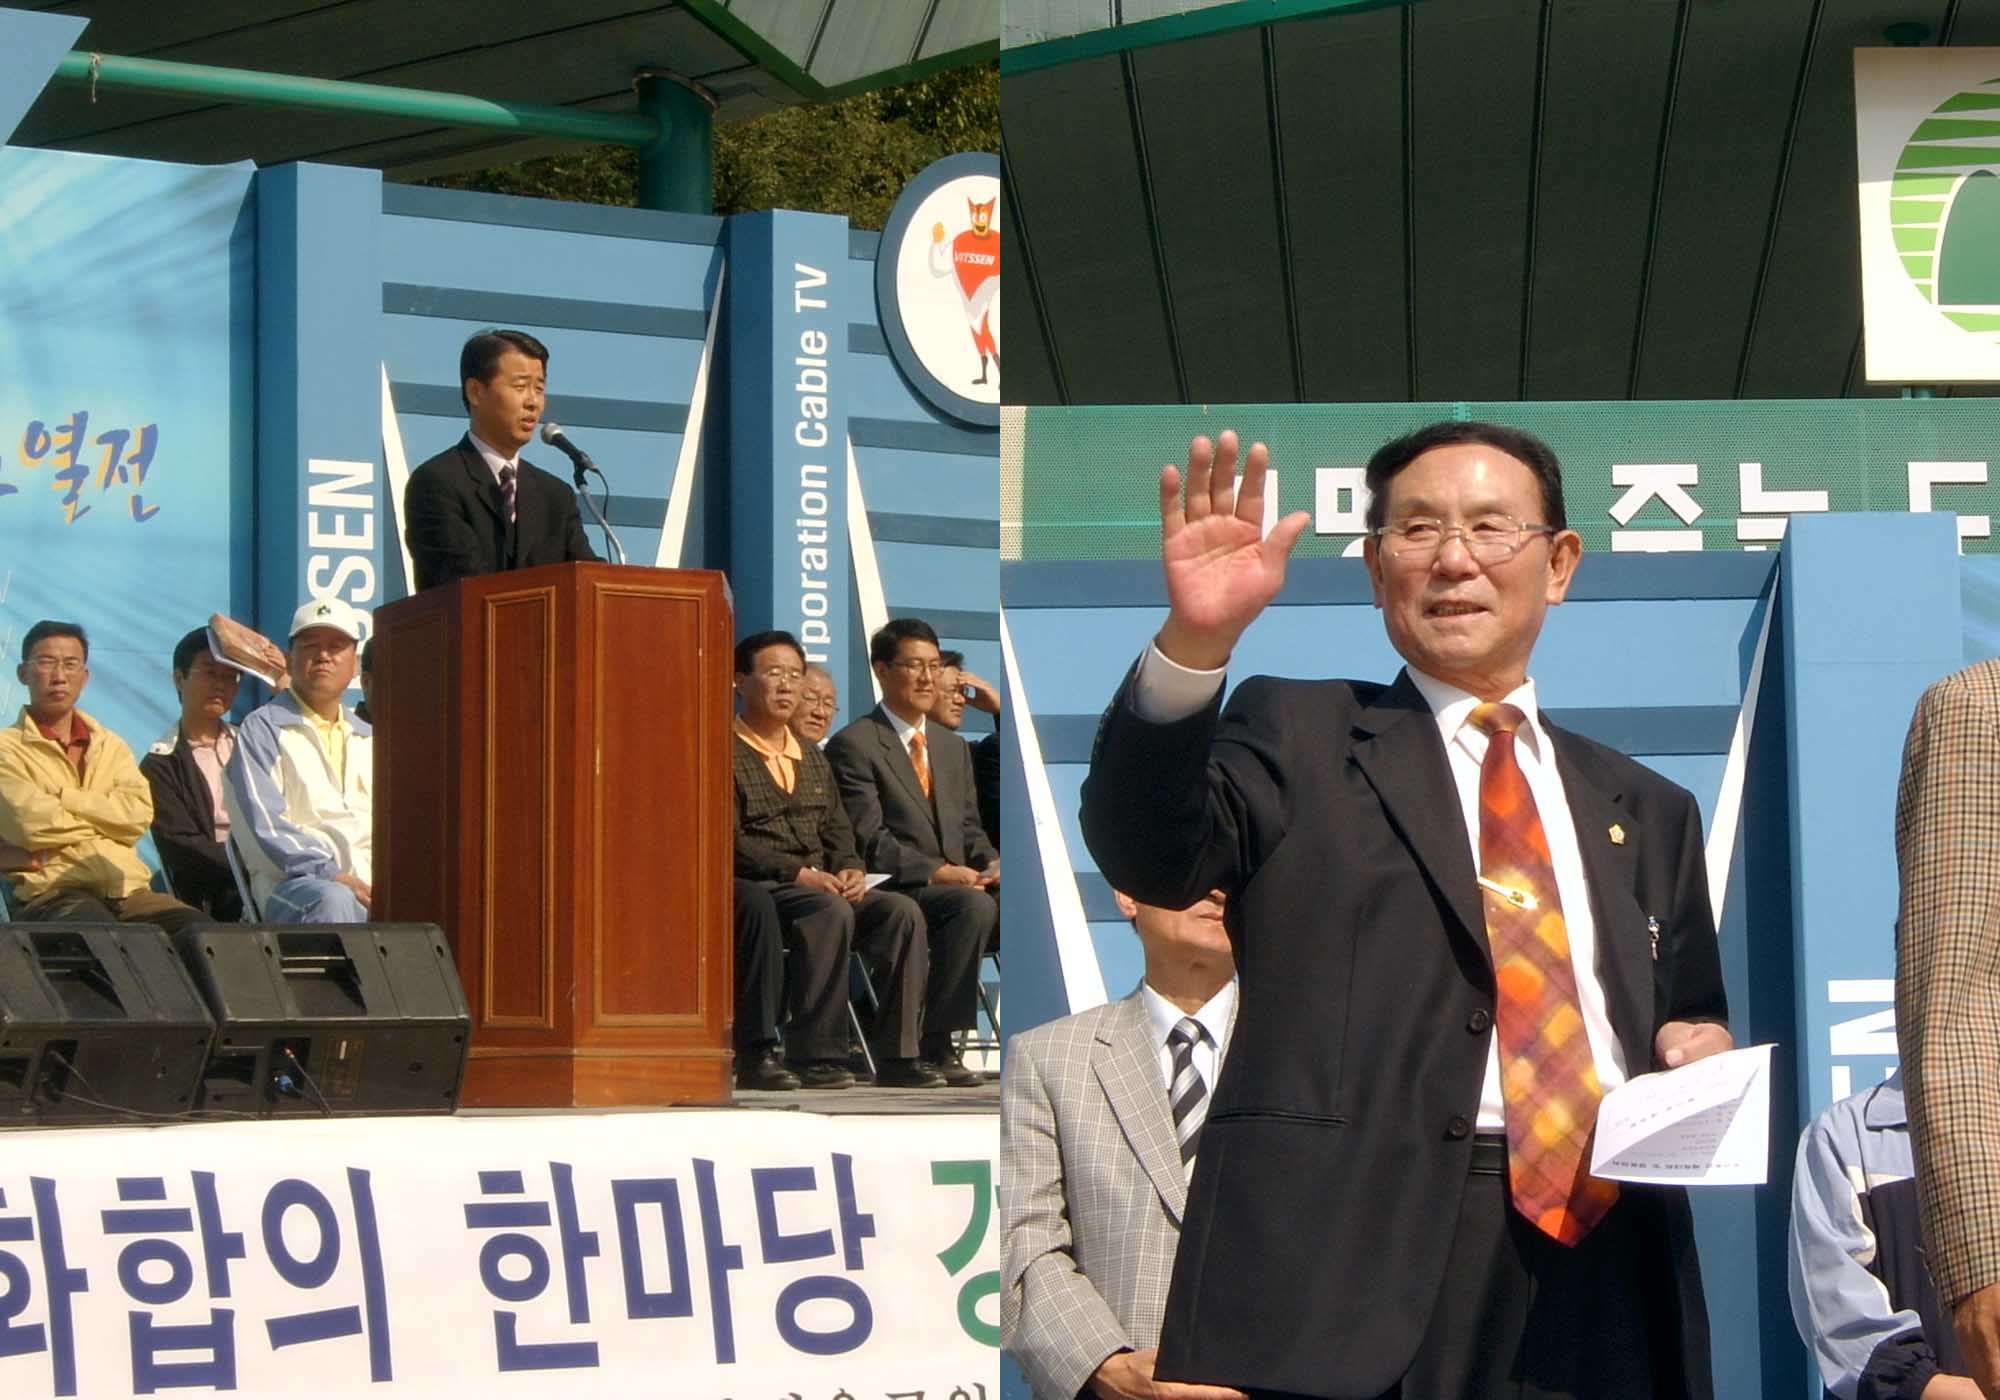 부곡동민의날 행사에 참석하여 참가자들을 격려하고 있는  권오규 의장과 단창욱 의원('04.10.17)